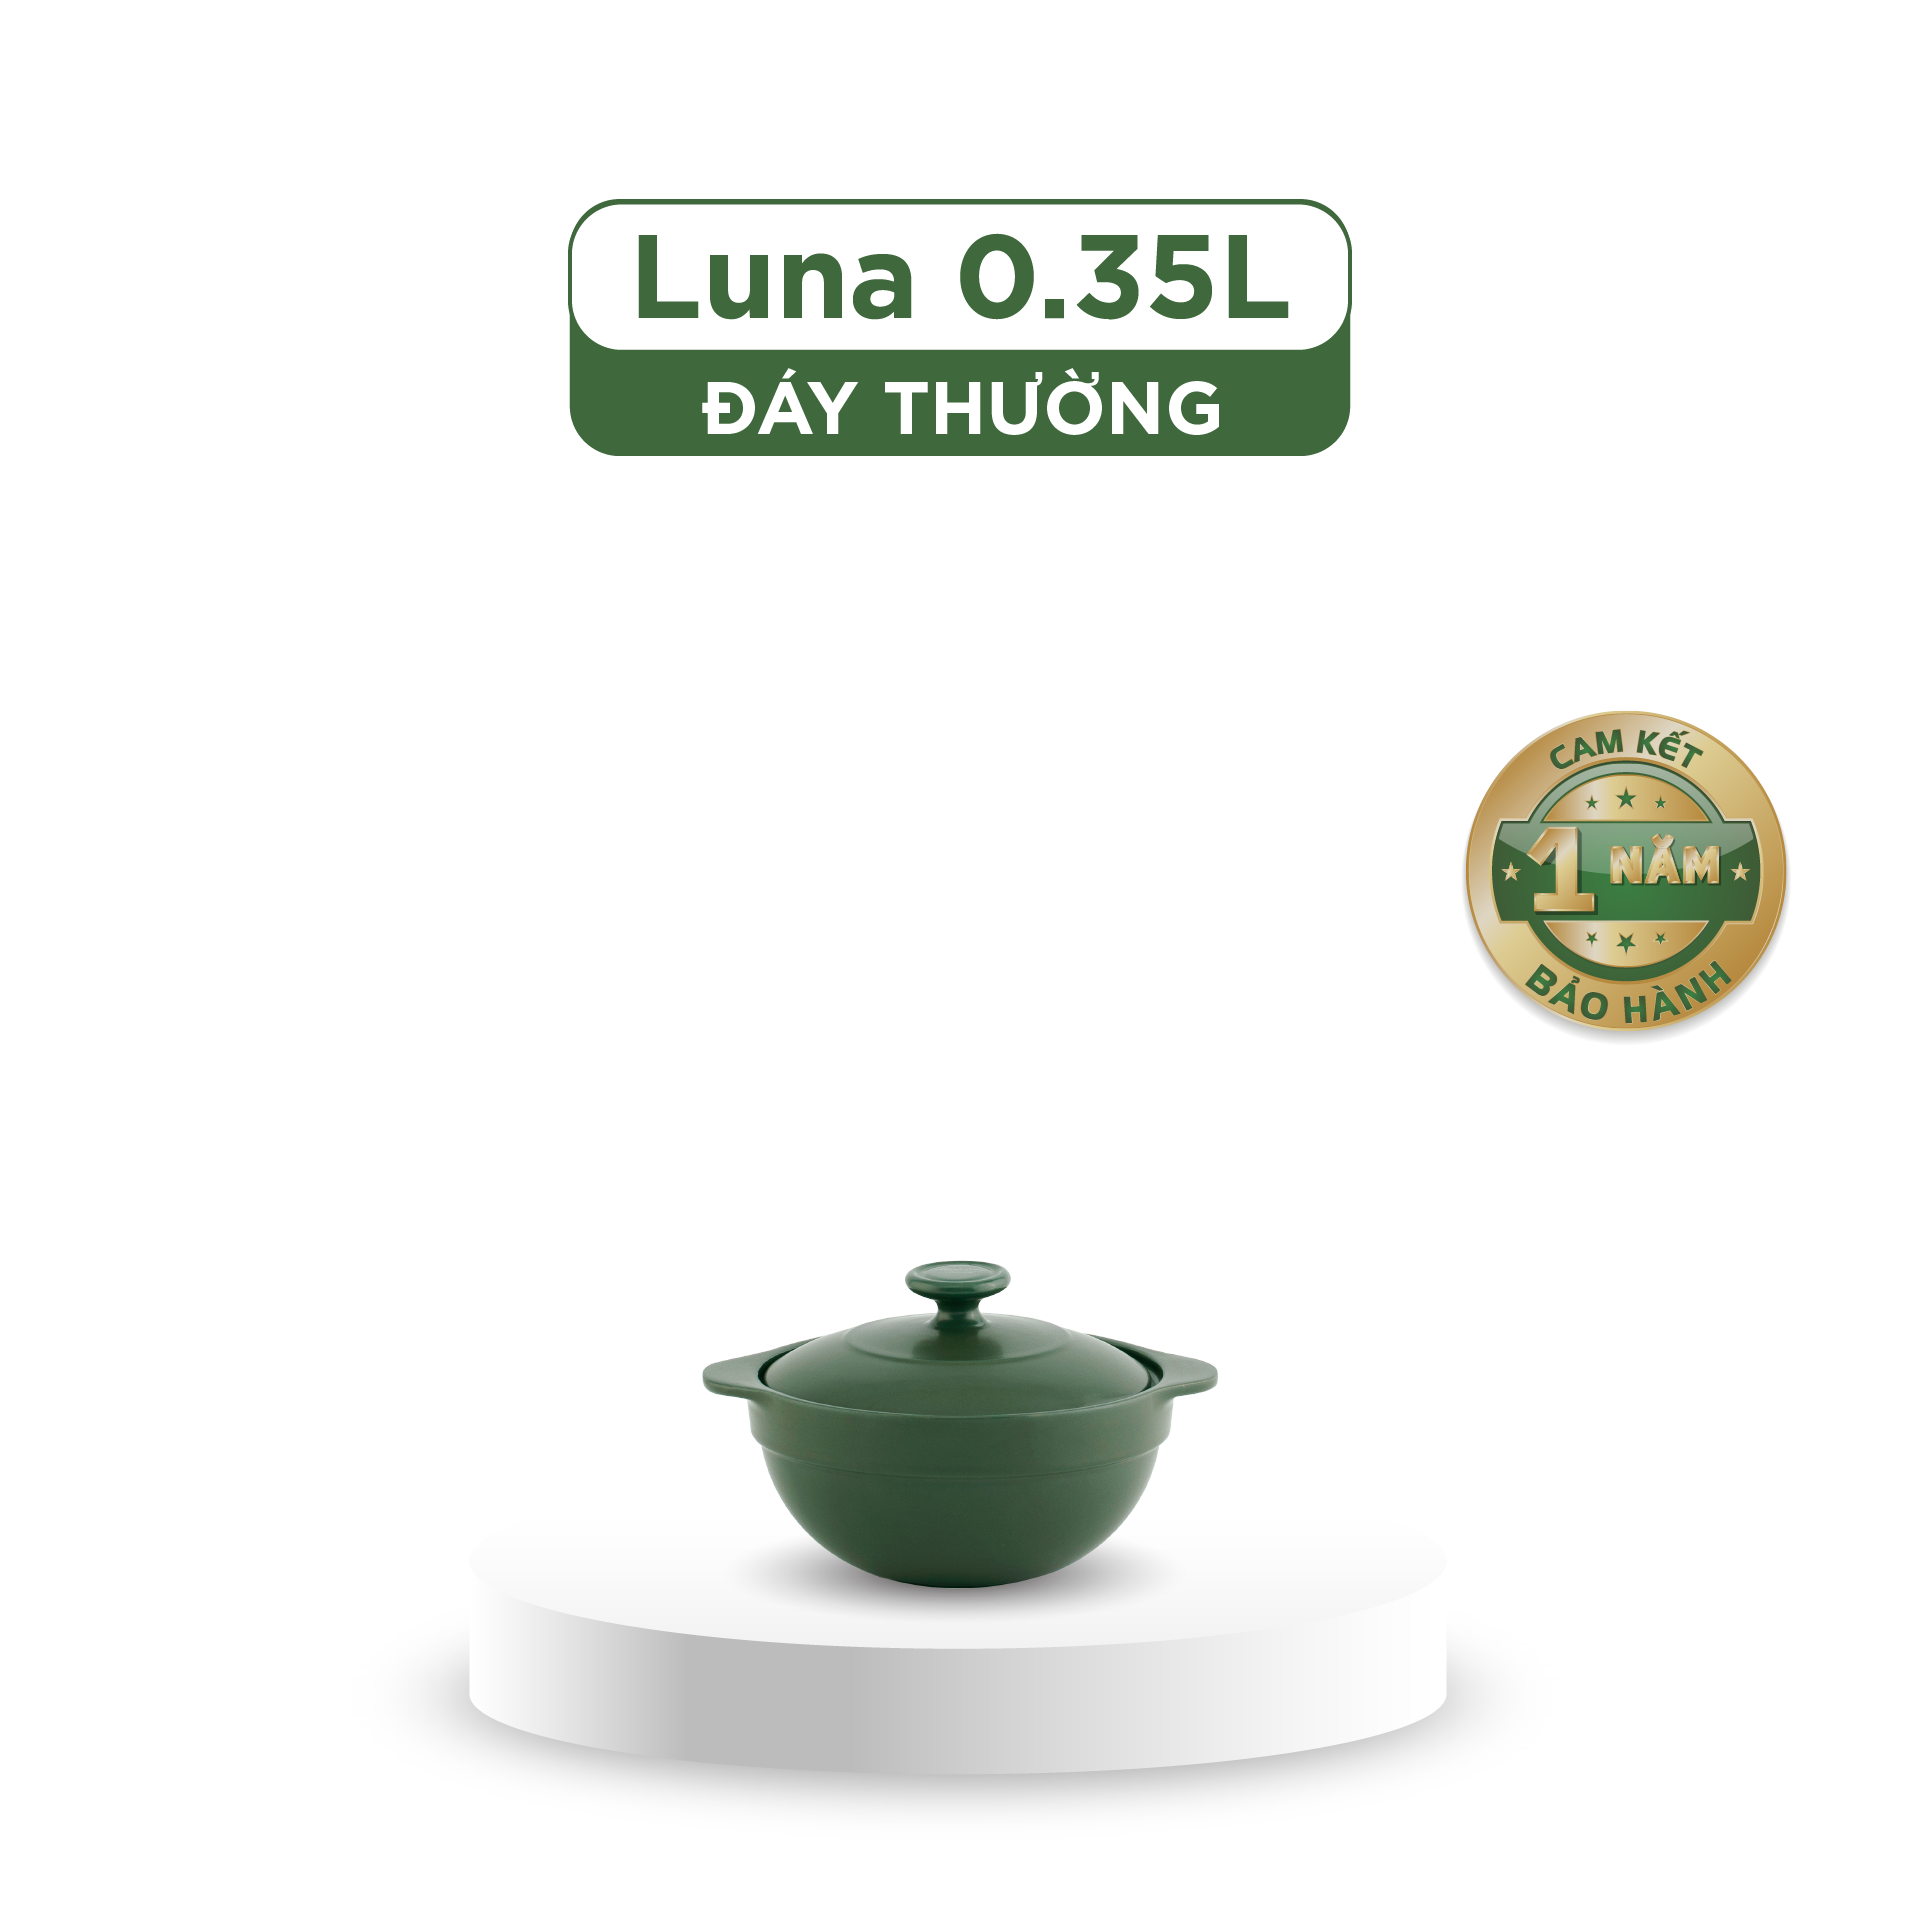 Nồi dưỡng sinh Luna 0.35L + nắp - Healthycook - Xanh Rêu